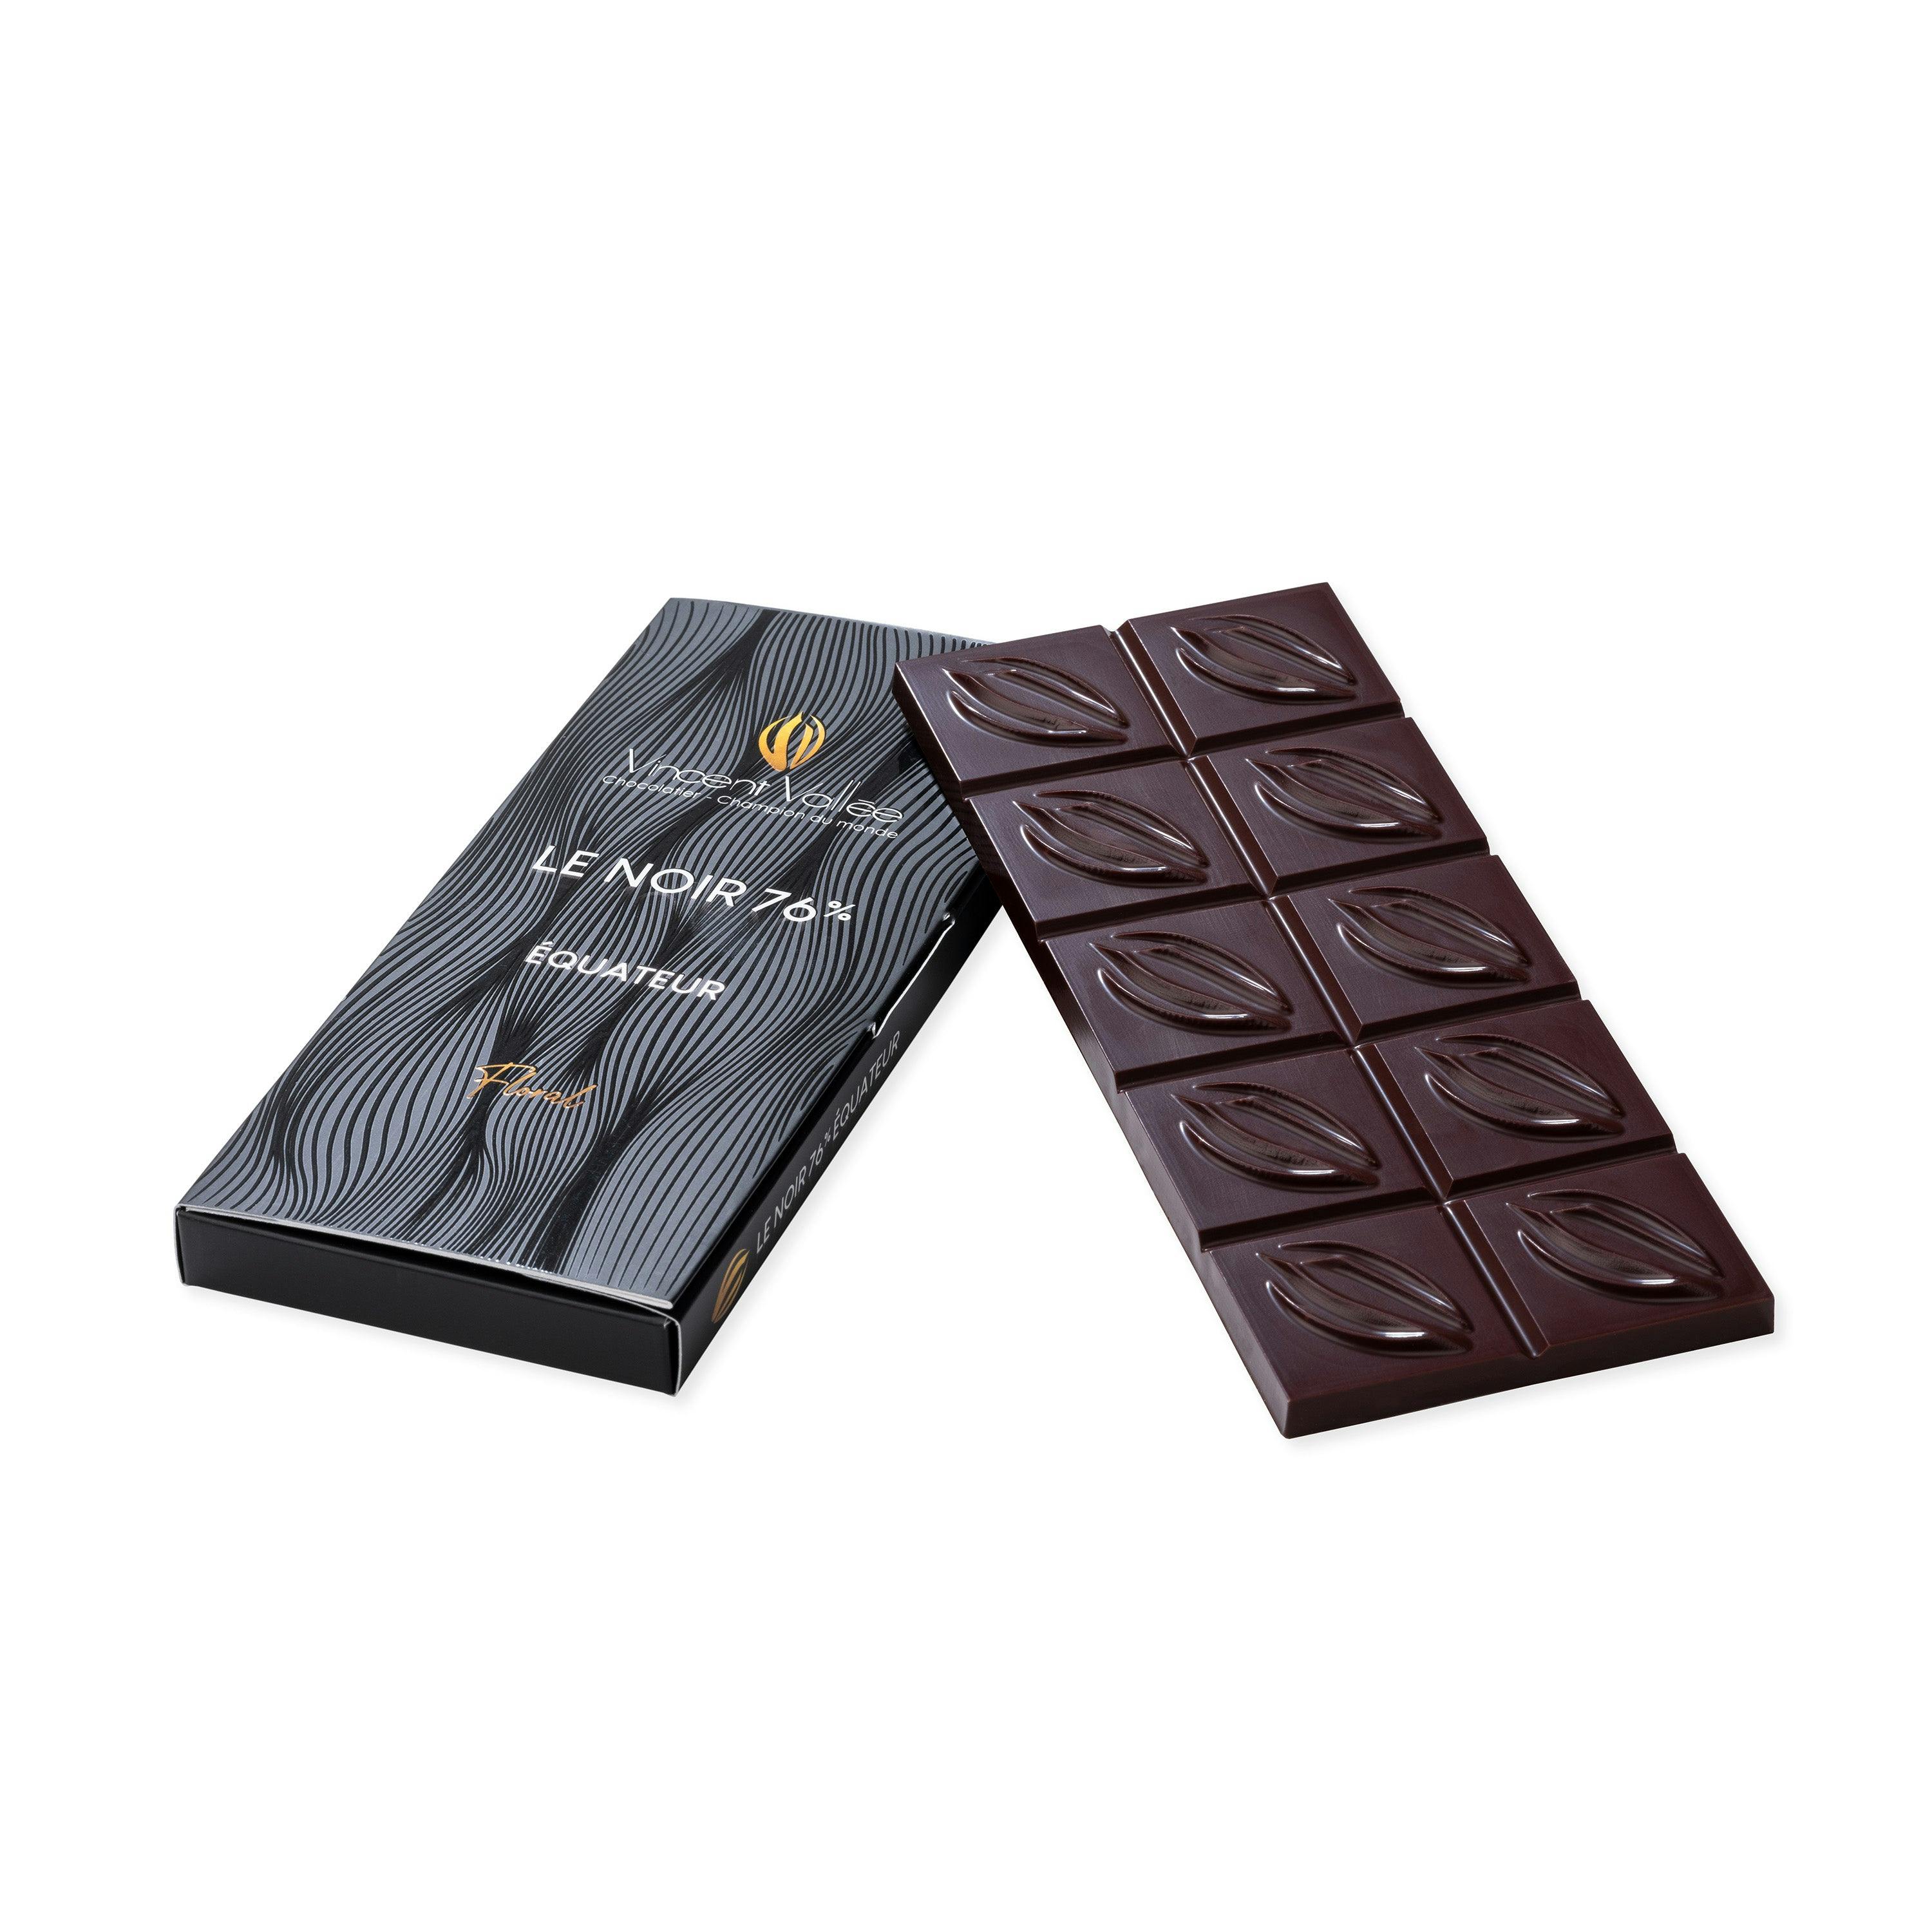 Équateur 76% - Vincent Vallée world champion chocolatier